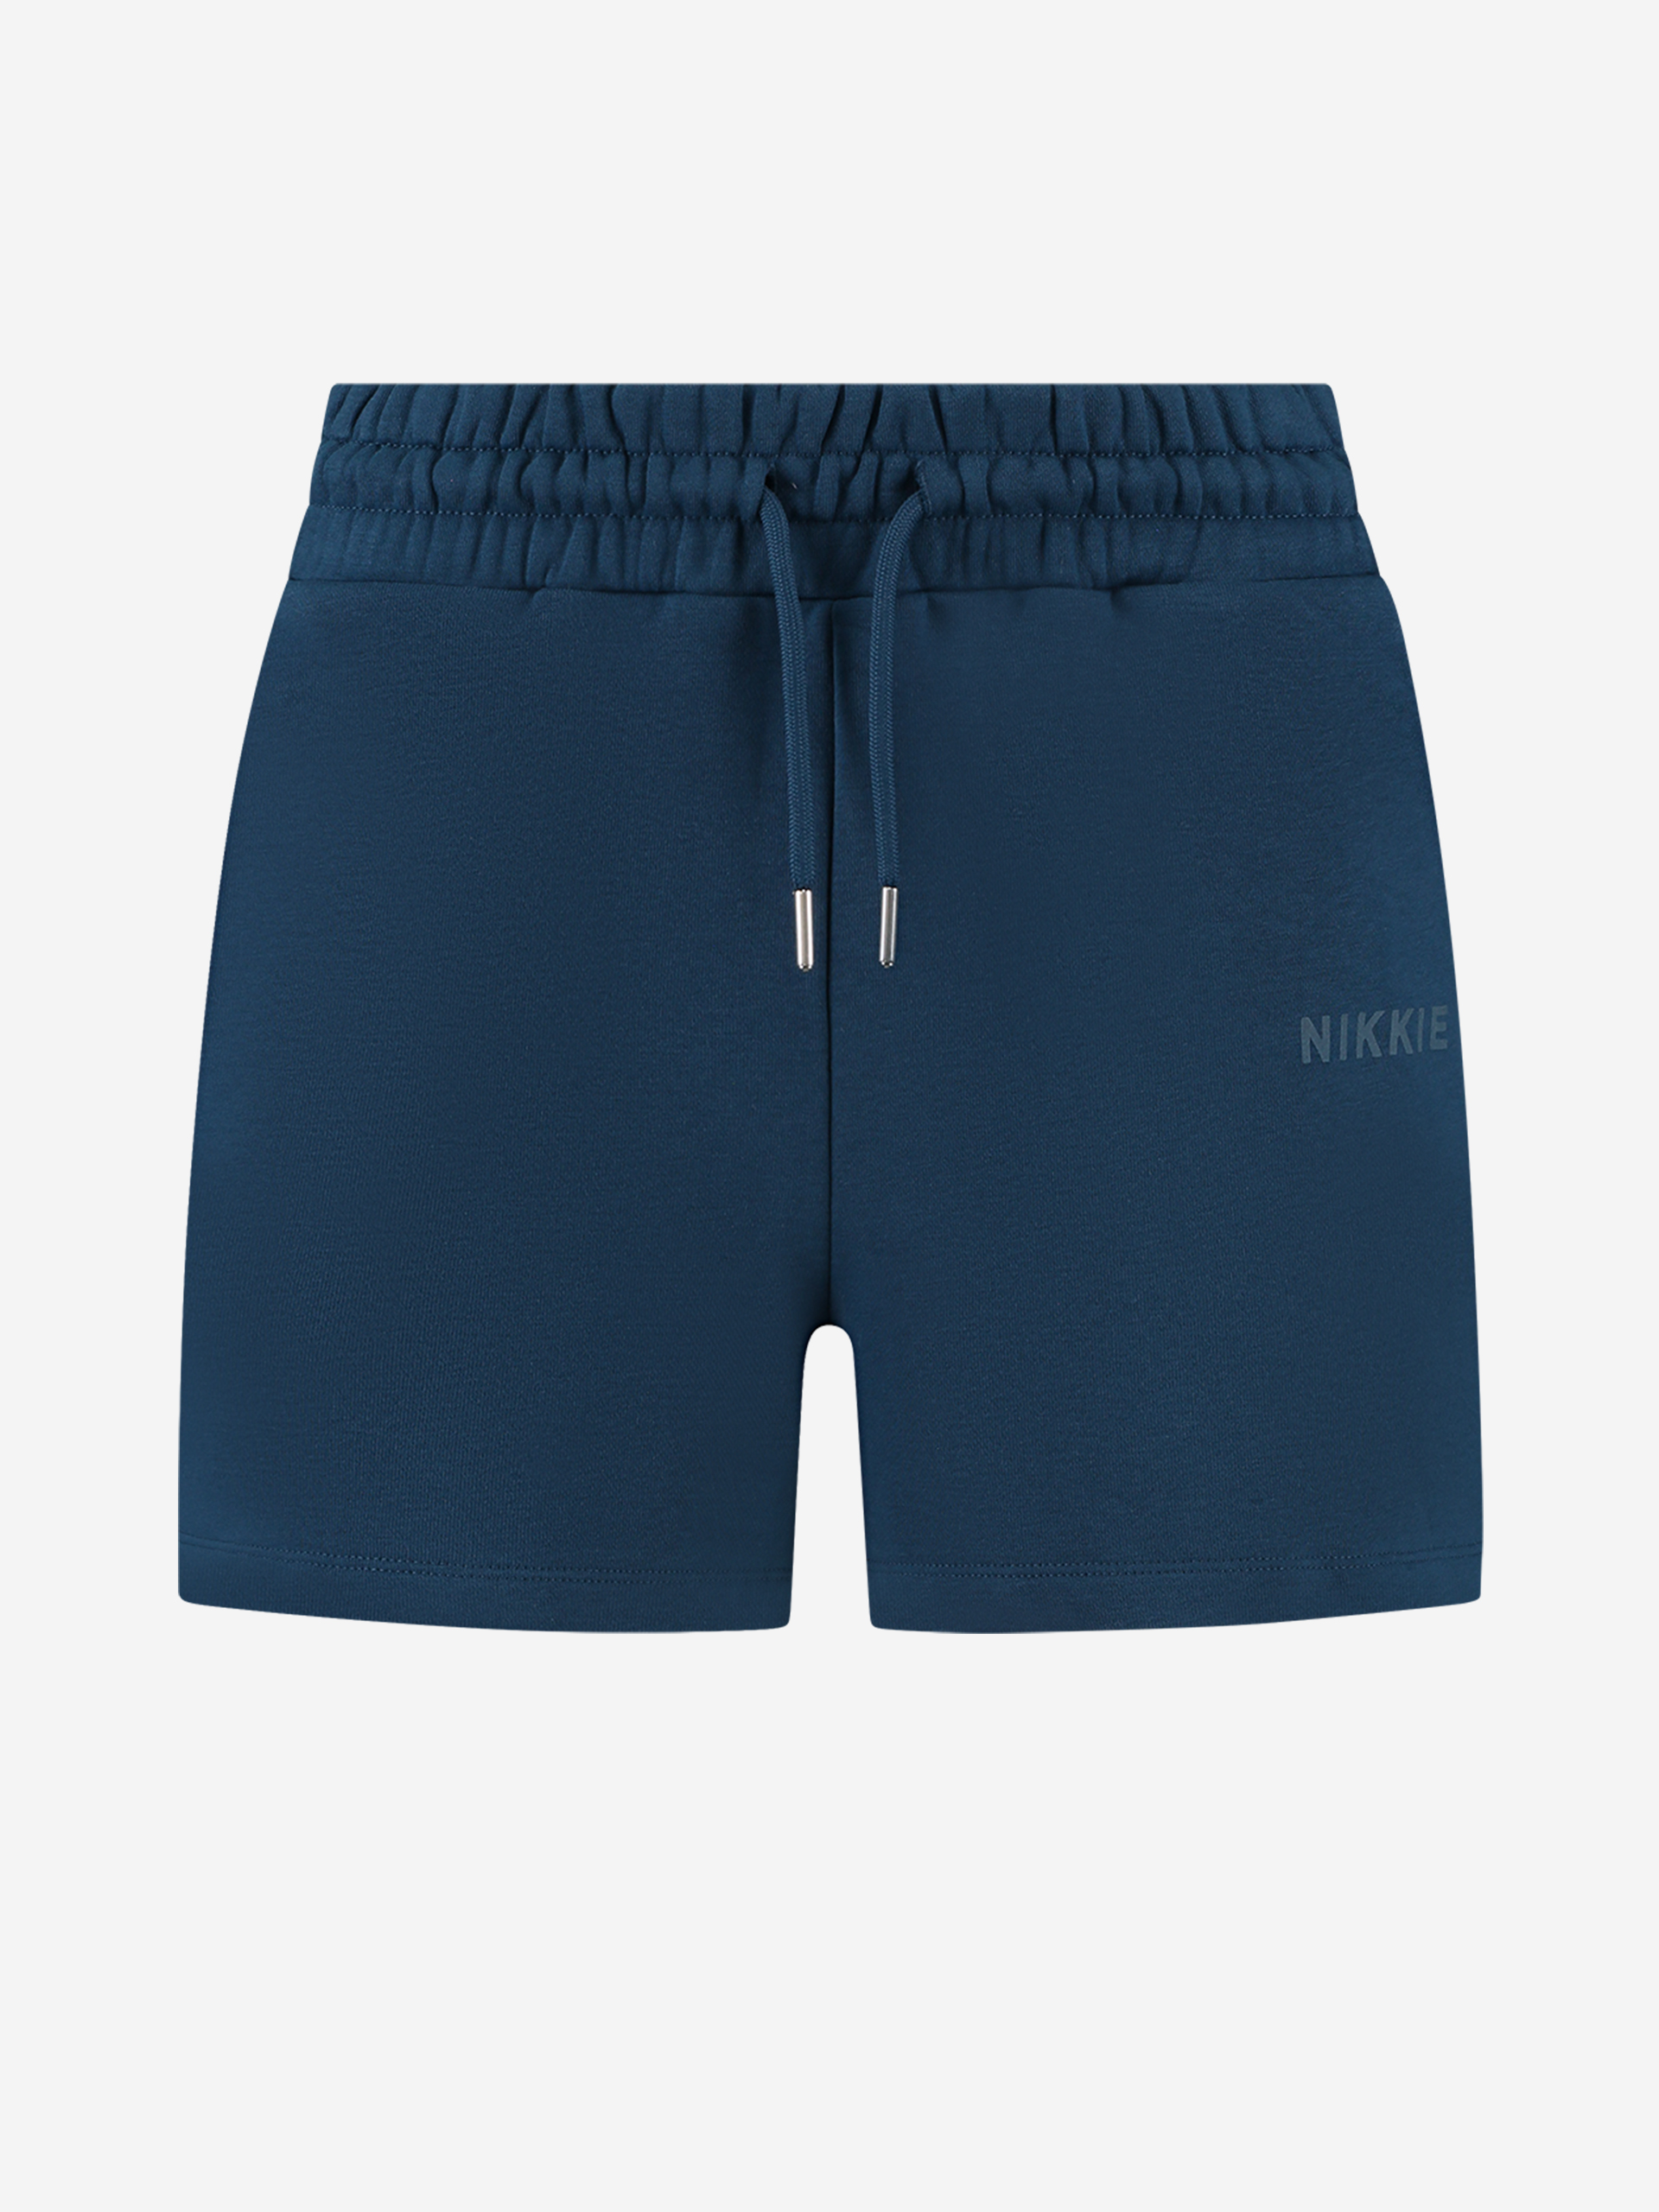 High-rise shorts